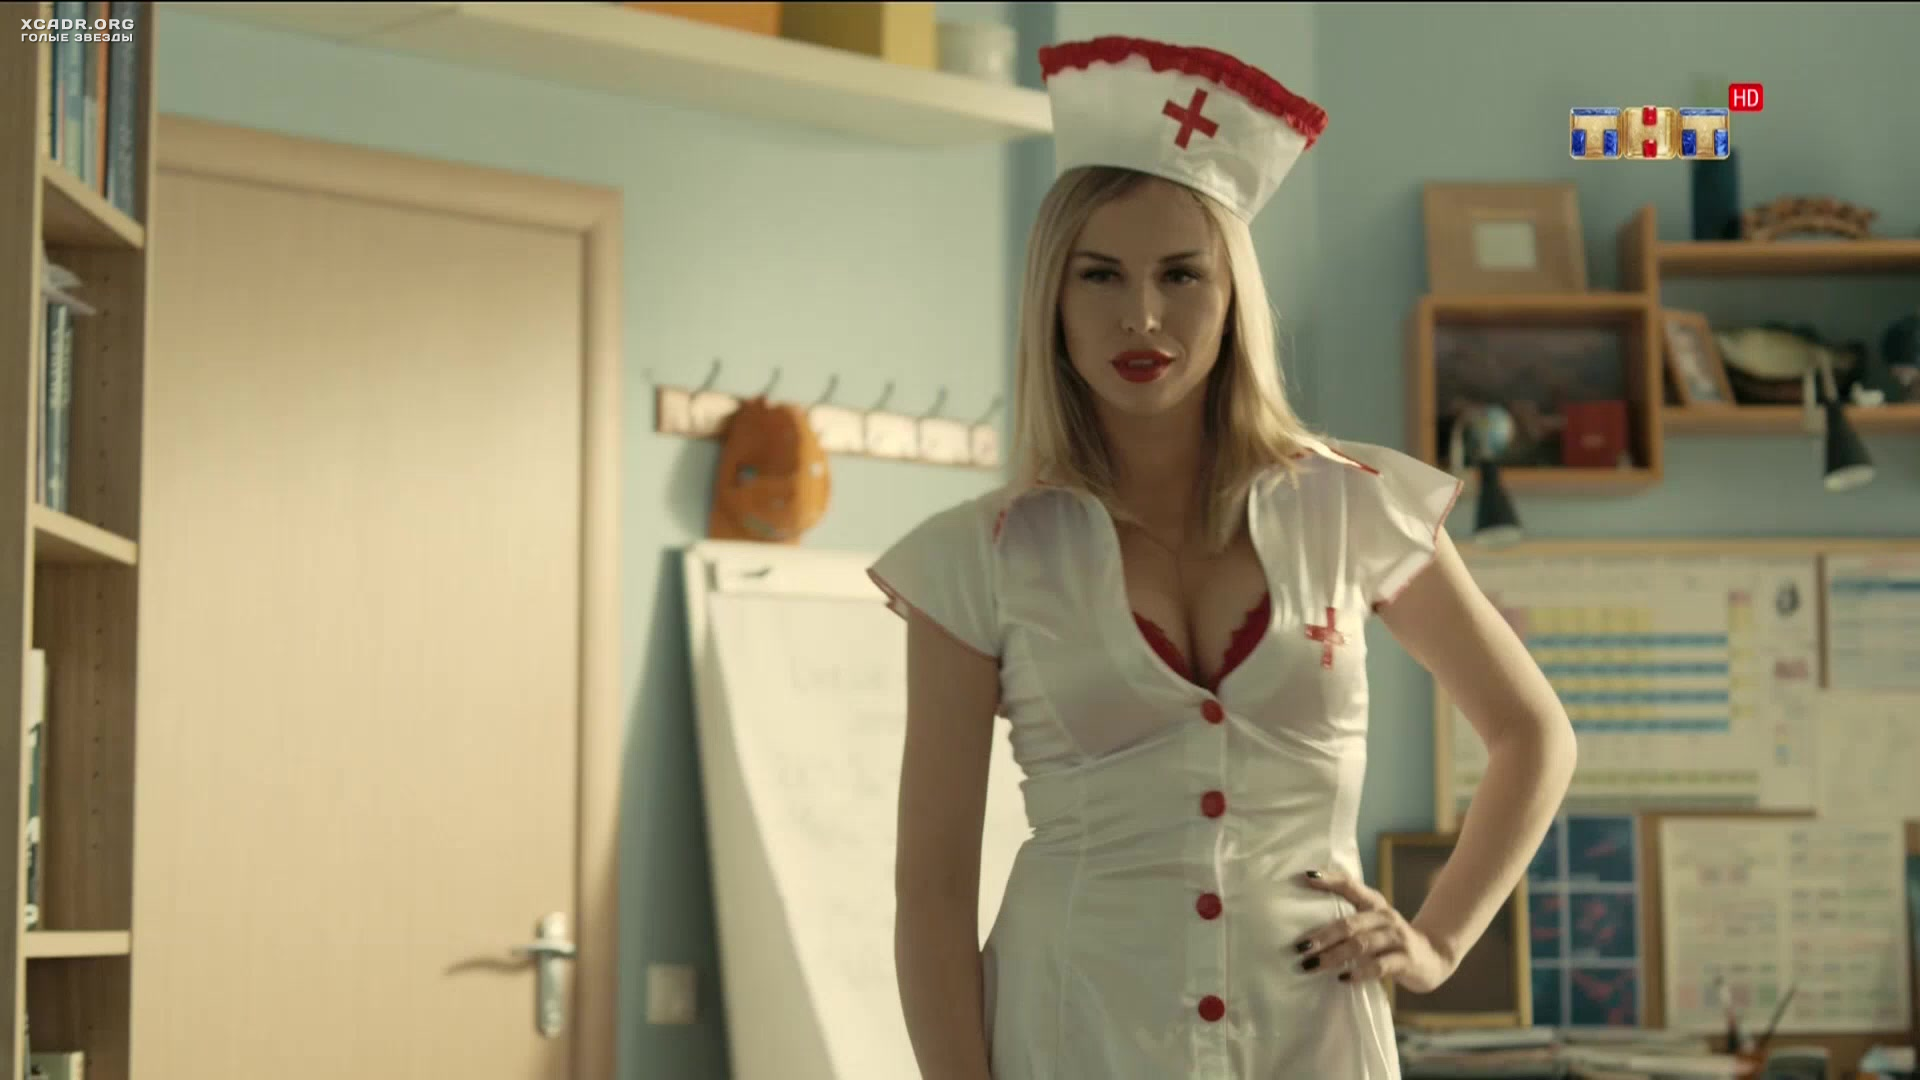 Брюнетка в костюме медсестры старательно показывает стриптиз получая от этого моральное удовлетворение 